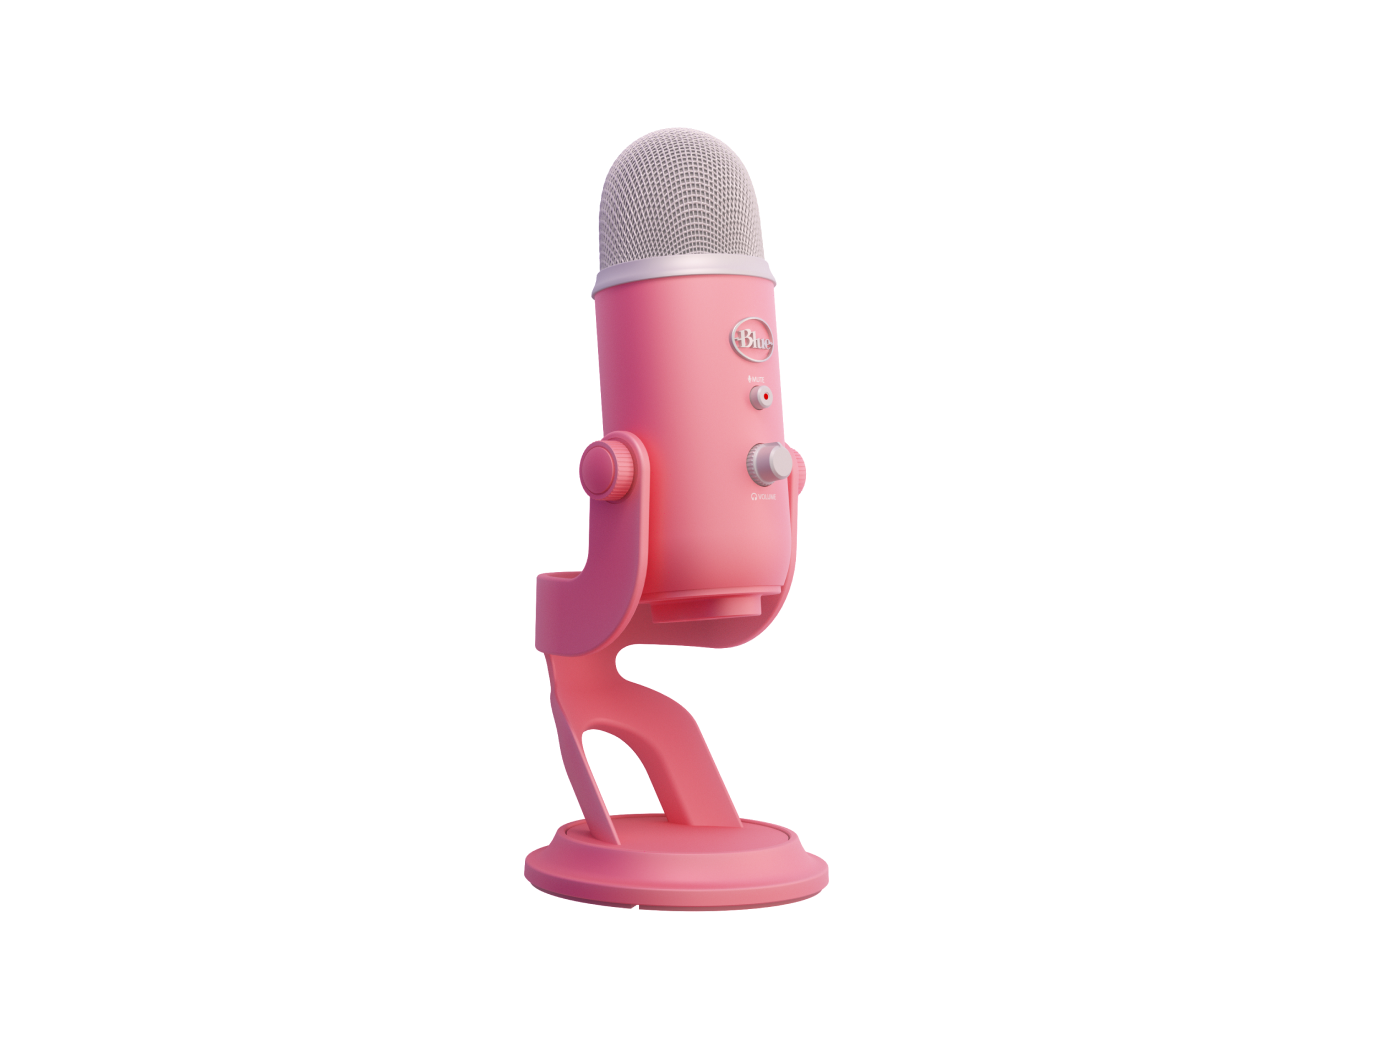 YETI PER LA COLLEZIONE AURORA Microfono USB Premium a più modalità di rilevamento con Blue VO!CE - Pink Dawn